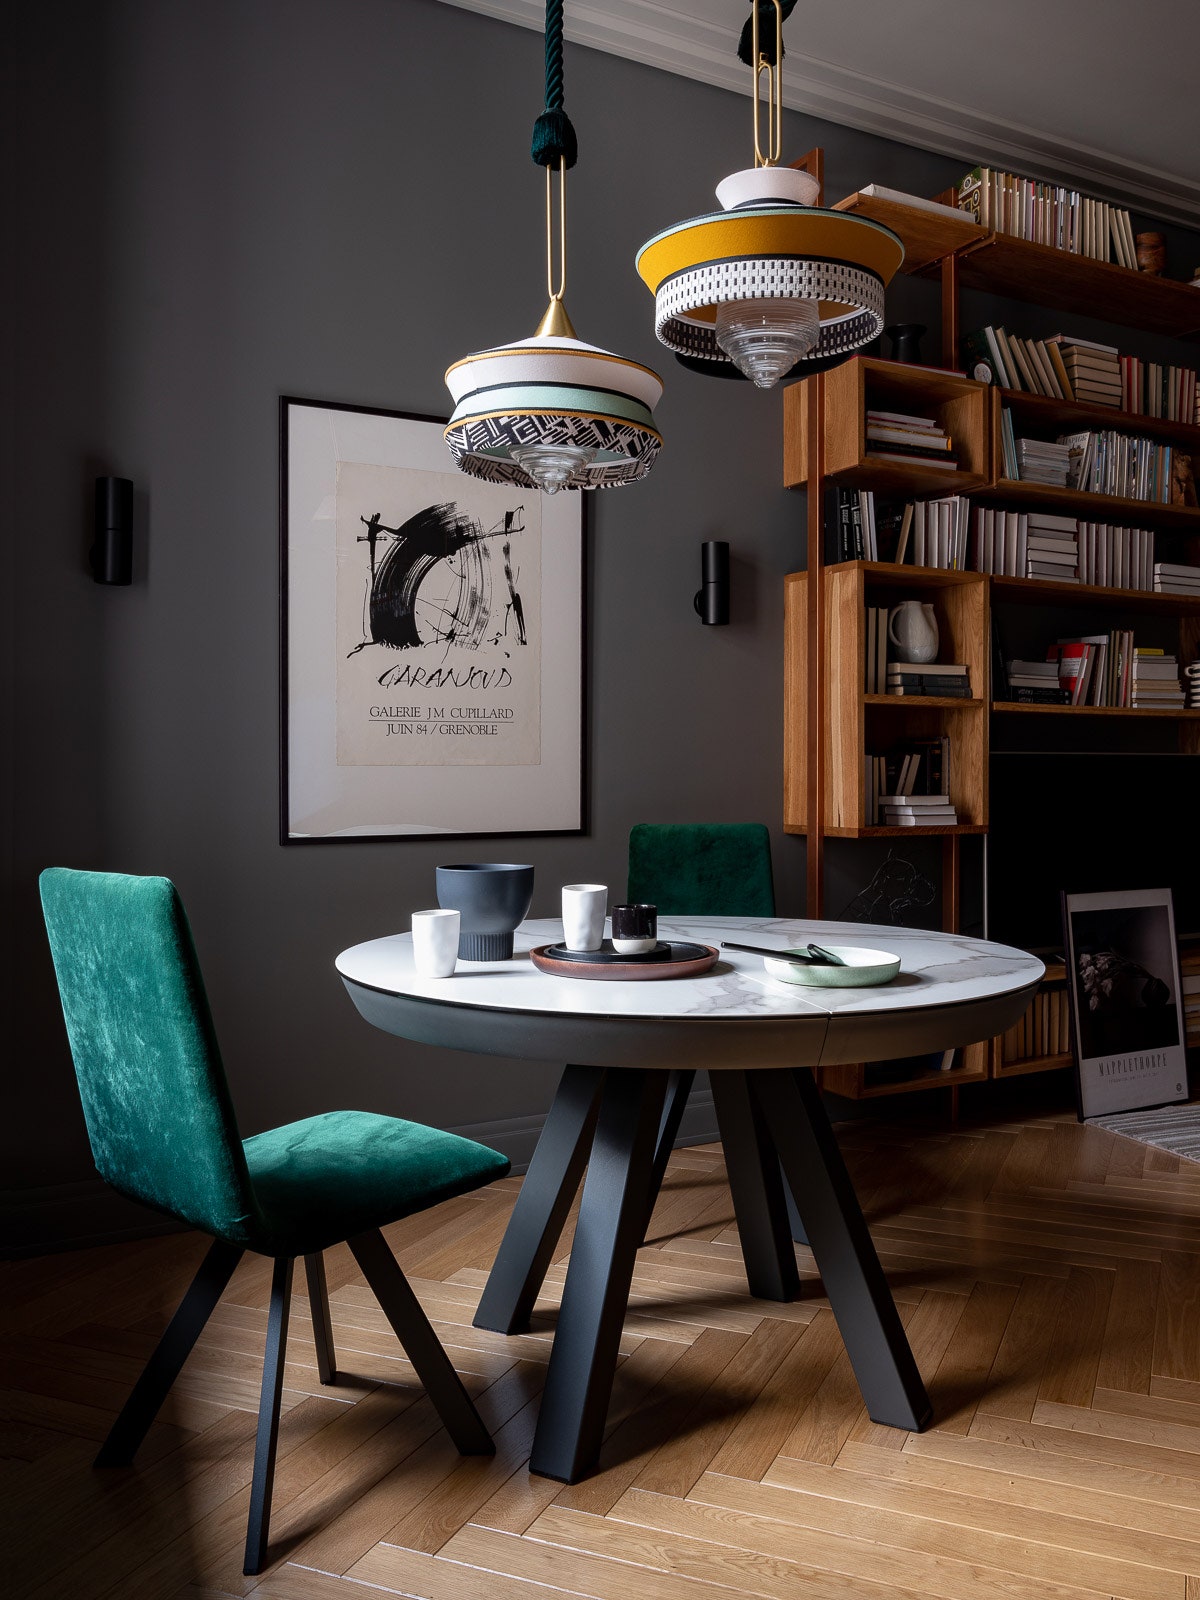 Кухнягостиная. Стол и стулья Mobliberica подвесные светильники Сontardi стеллаж сделан на заказ по эскизам архитектора в...